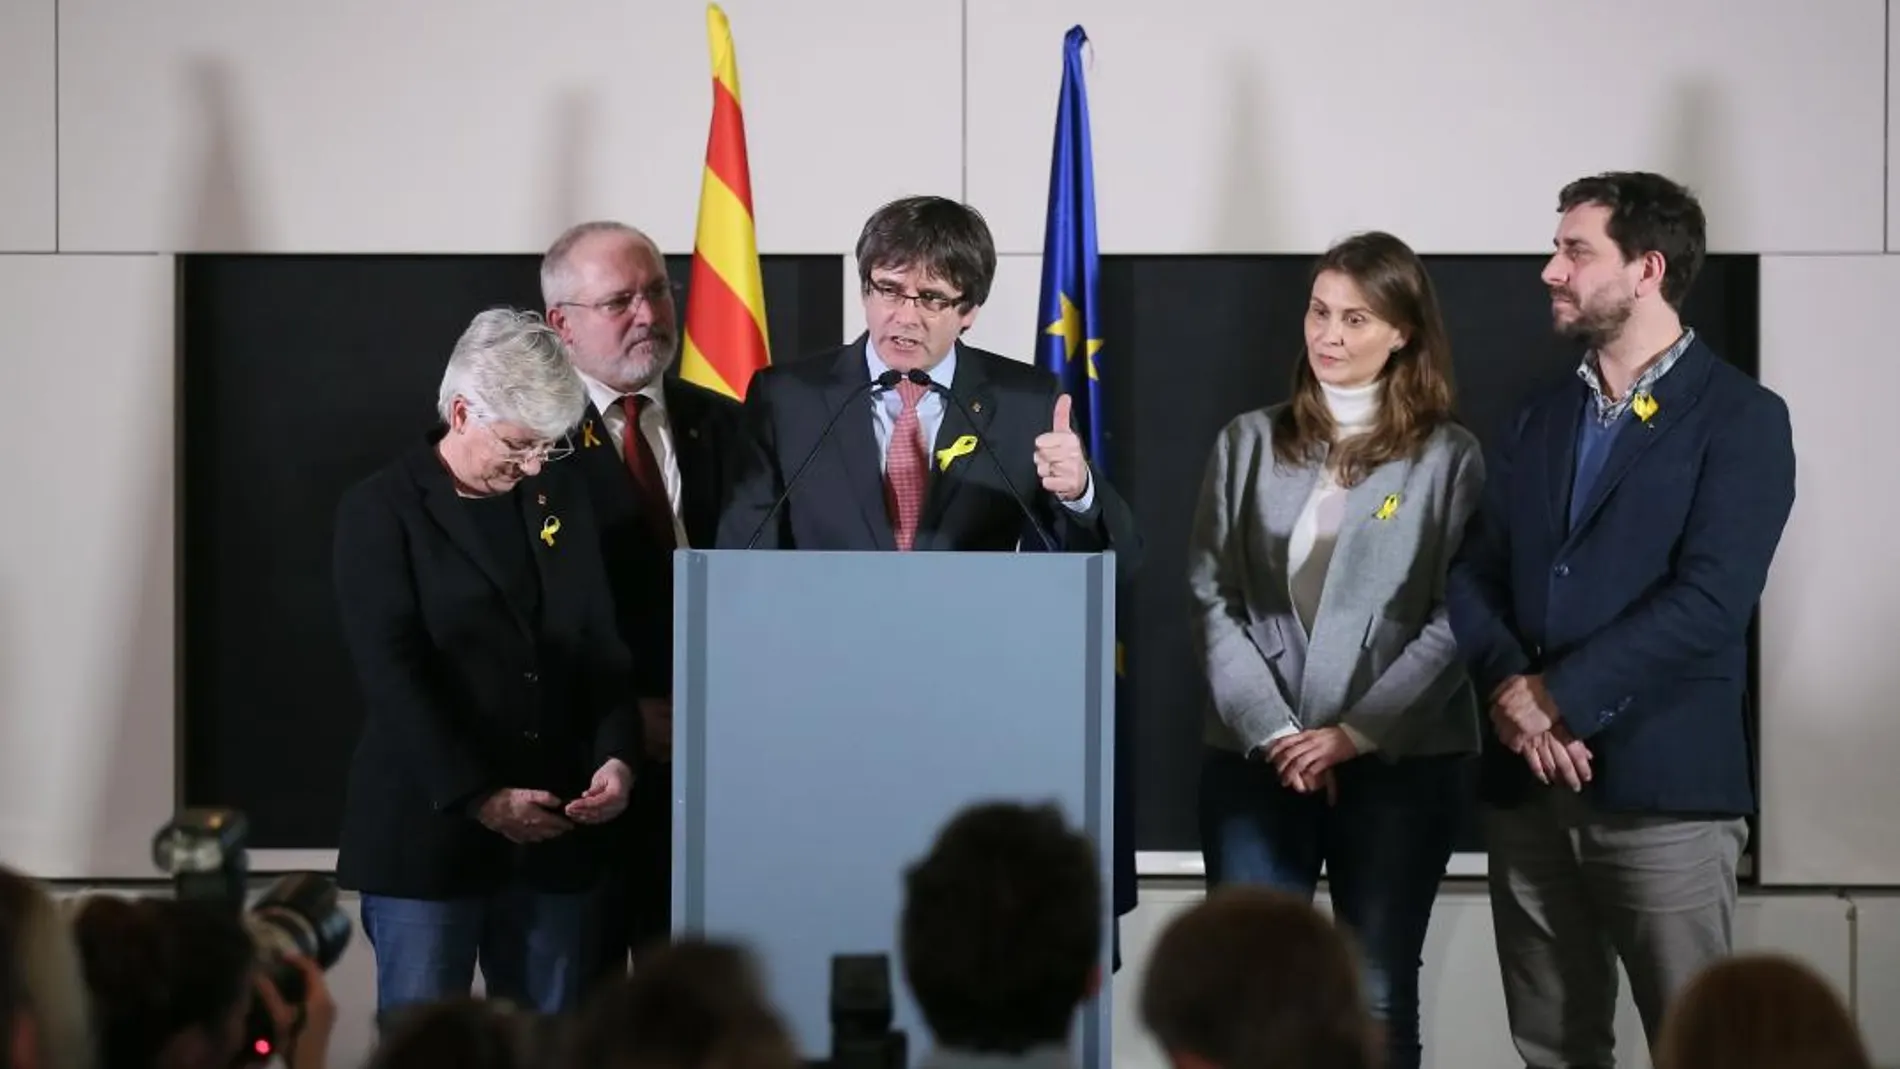 El expresidente de la Generalitat y candidato de Junts per Catalunya, Carles Puigdemont, pronuncia su discurso sobre los resultados de las elecciones regionales catalanas / Efe